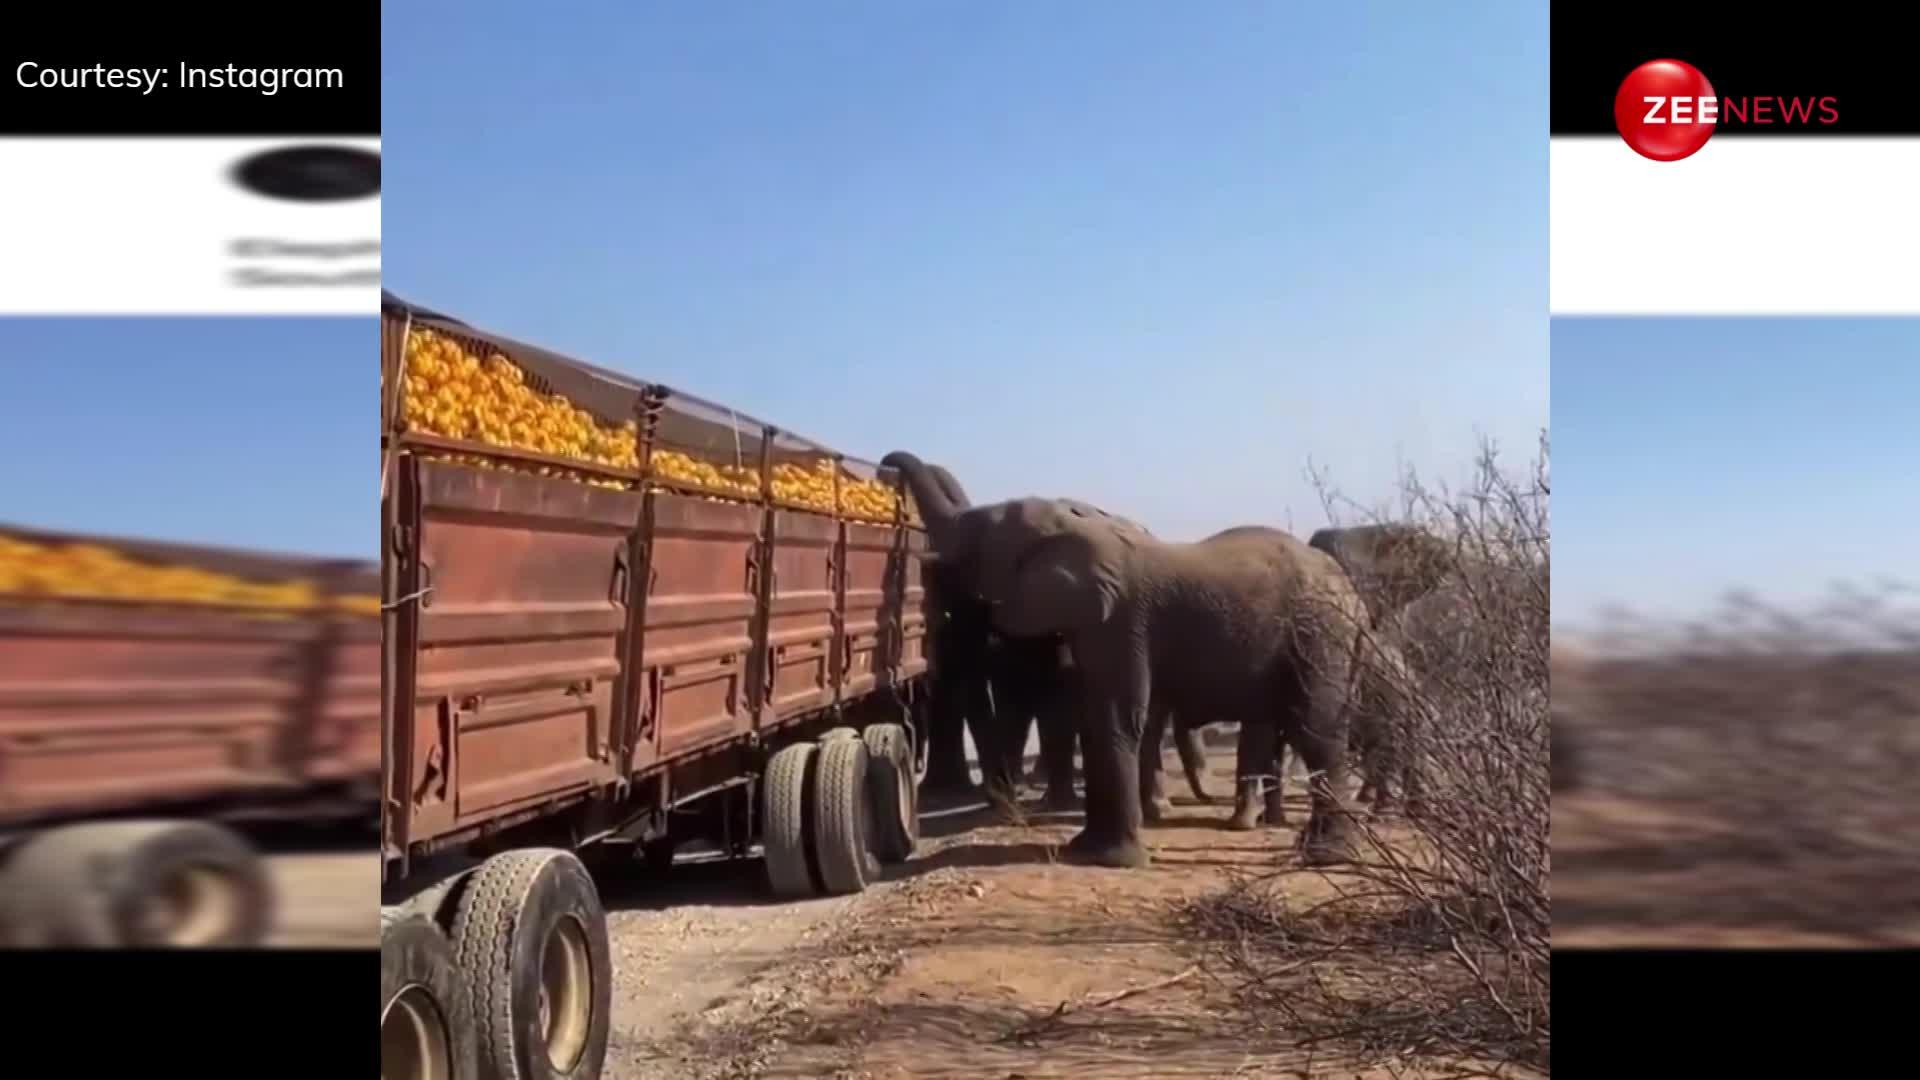 संतरों से भरे हुए ट्रक पर जंगली हाथियों ने बोला धावा, मिनटों में लूट लिए सारे फ्रूट्स